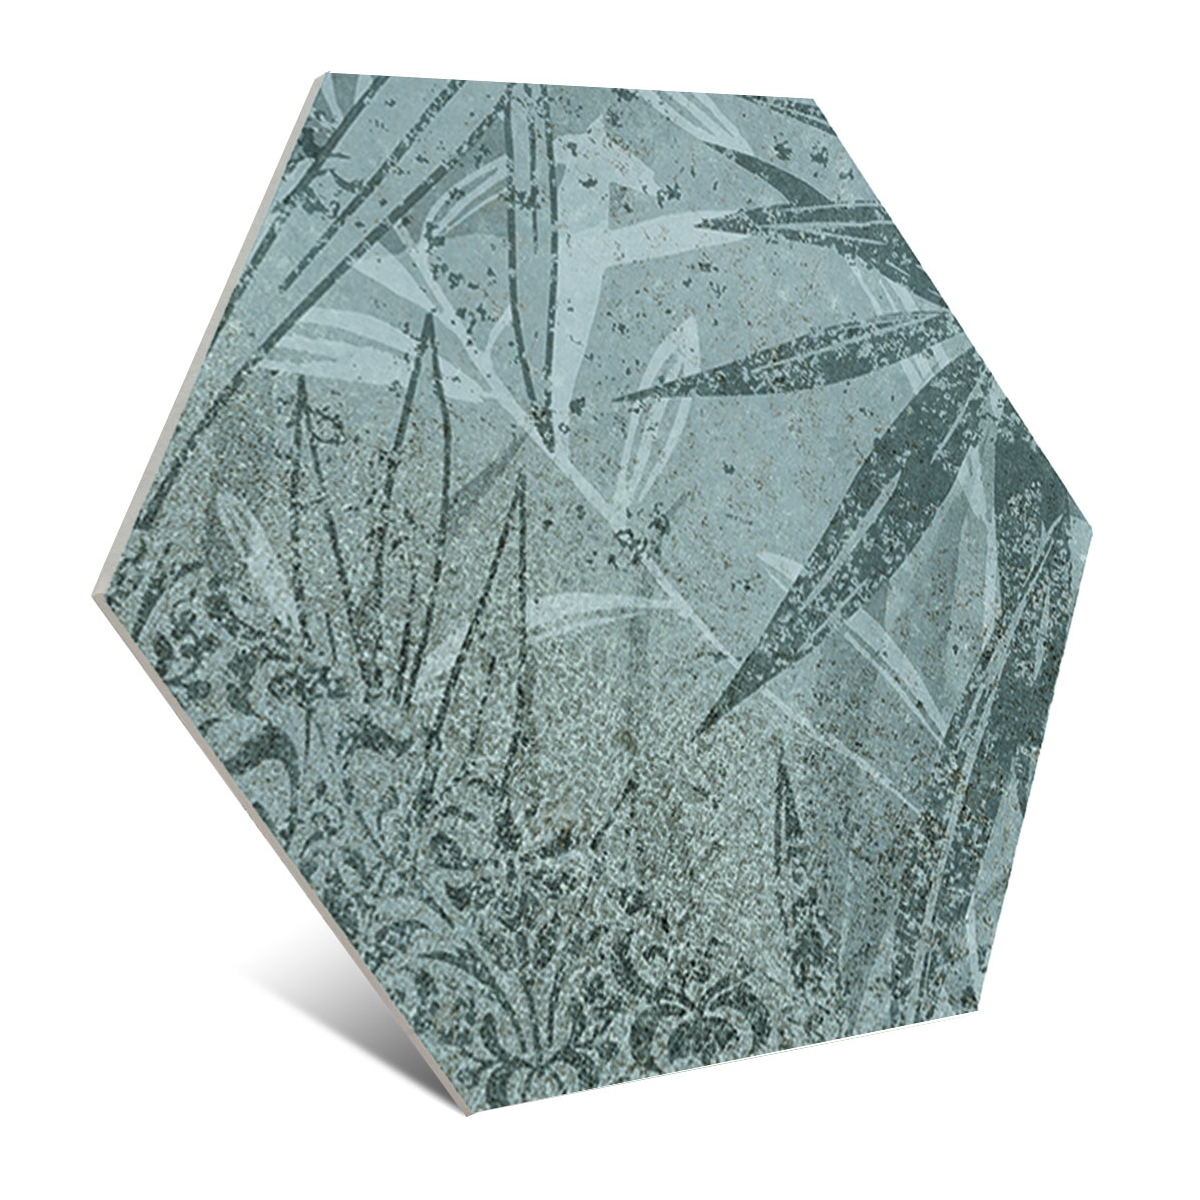 Foto de Magnet Tropic Mint 15x17 (Caja 0,5 m2)